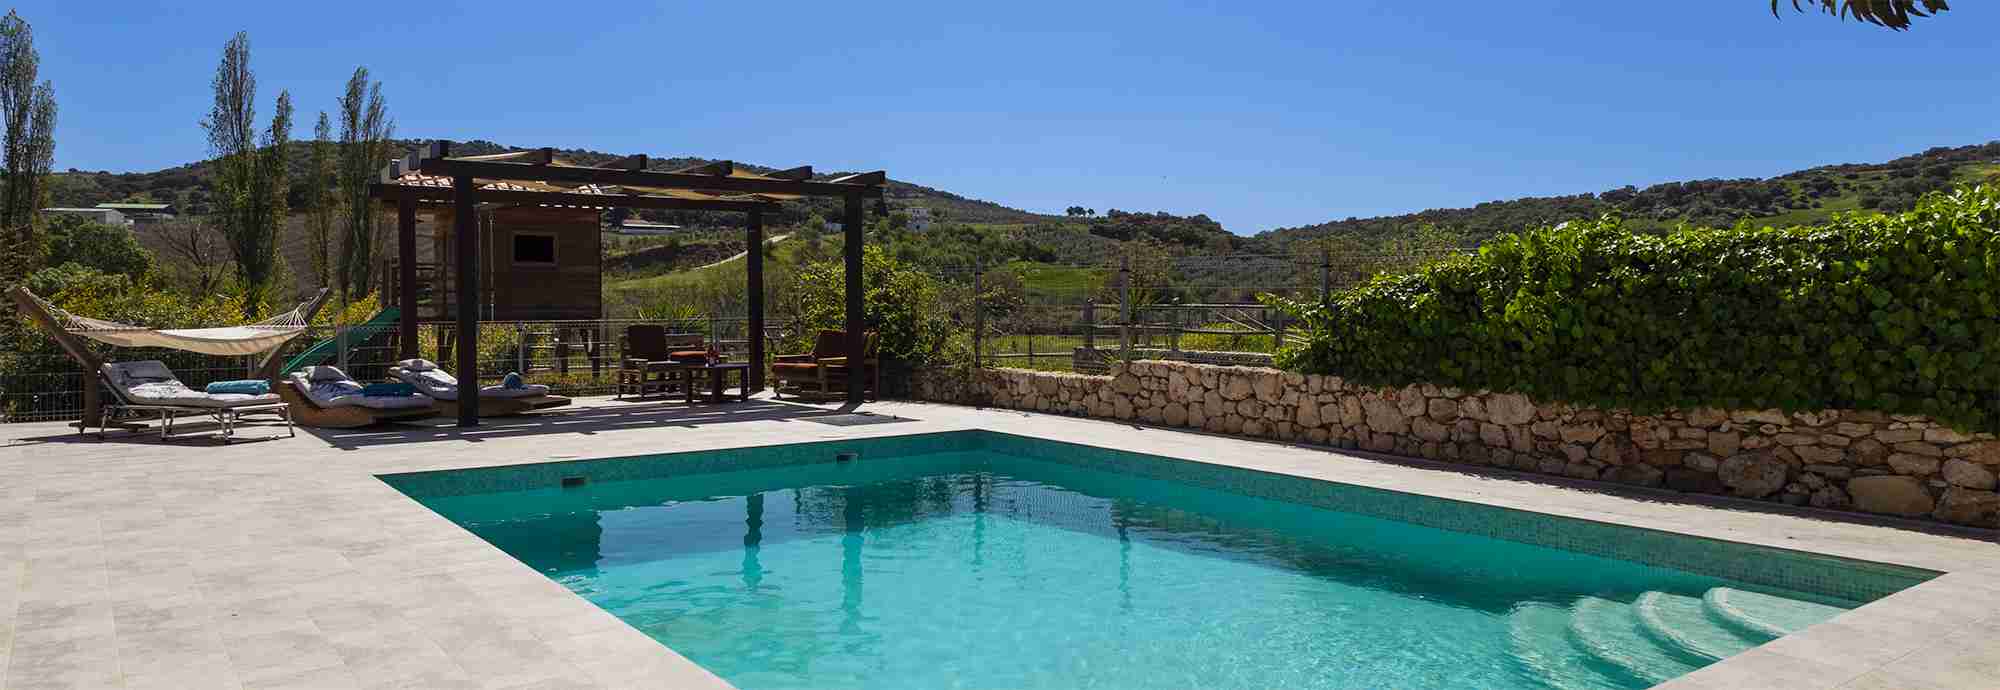 Villa familiar en enclave privado y natural con piscina vallada